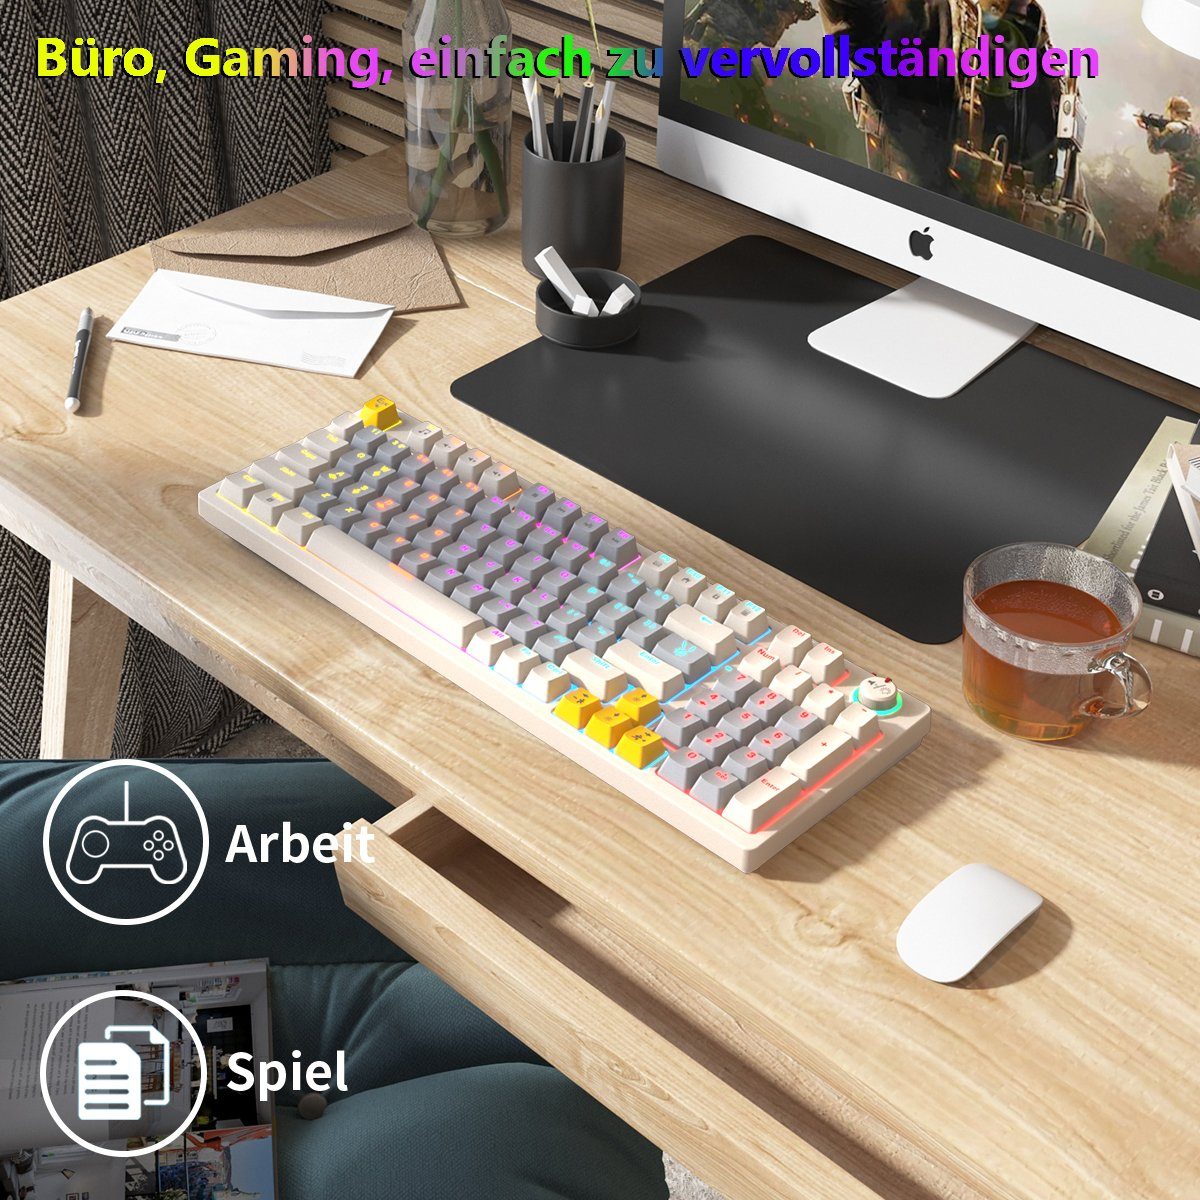 BUMHUM Nicht deutsche Tastatur Echte Weiß Tastatur,RGB-Beleuchtung Doppel- Gaming-Tastatur mechanische Kabe) mit RGB-Gaming-Tastatur und Dreifarbige (Zweifarbige